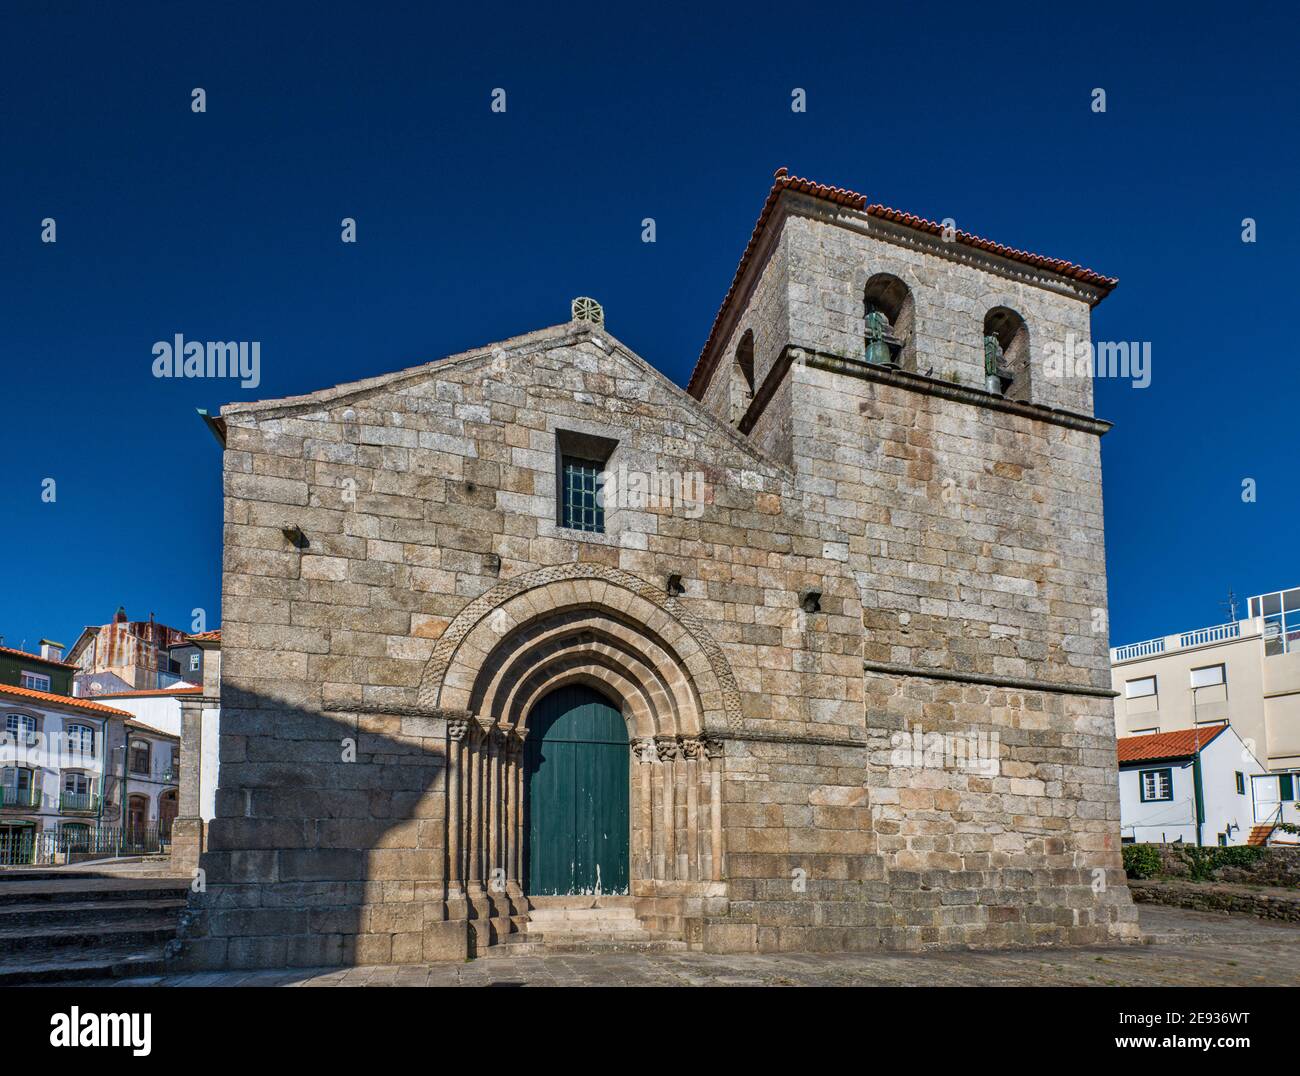 Igreja de Almacave, medieval church in Lamego, Norte region, Portugal Stock Photo